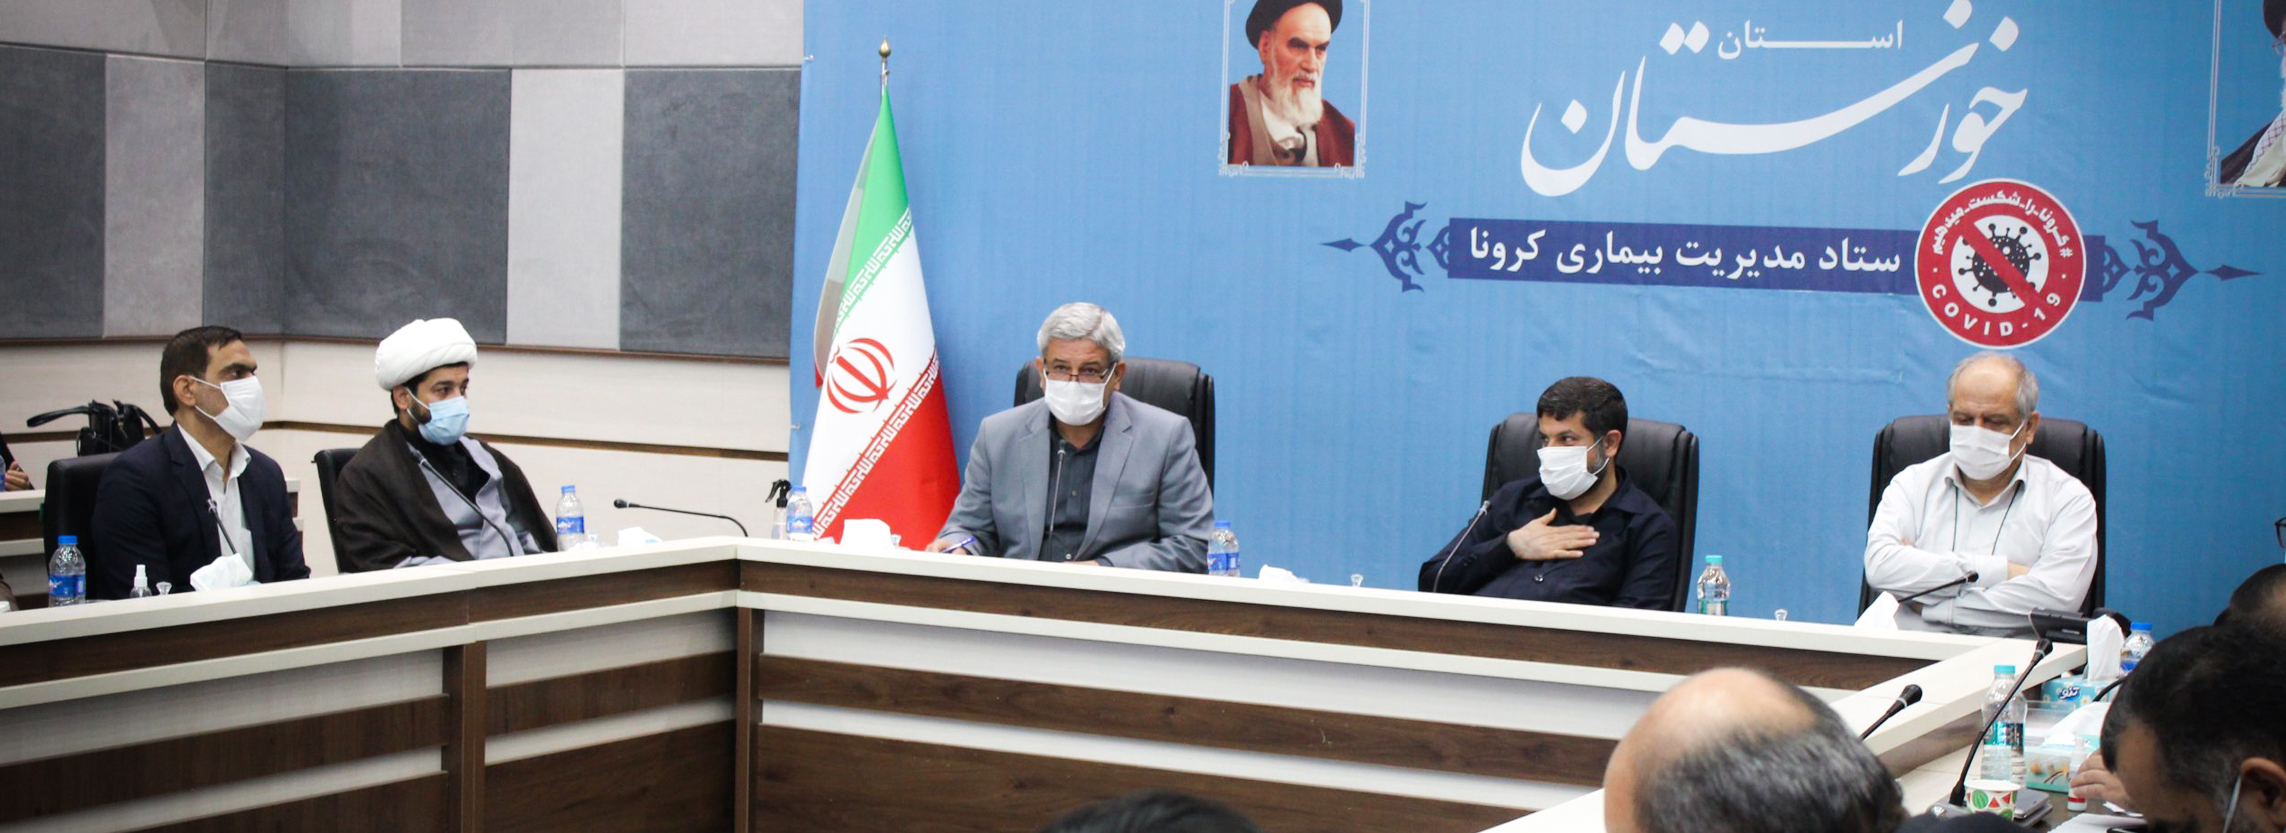 حضور مسئول اتحادیه استان در جلسه شورای آموزش و پرورش استان